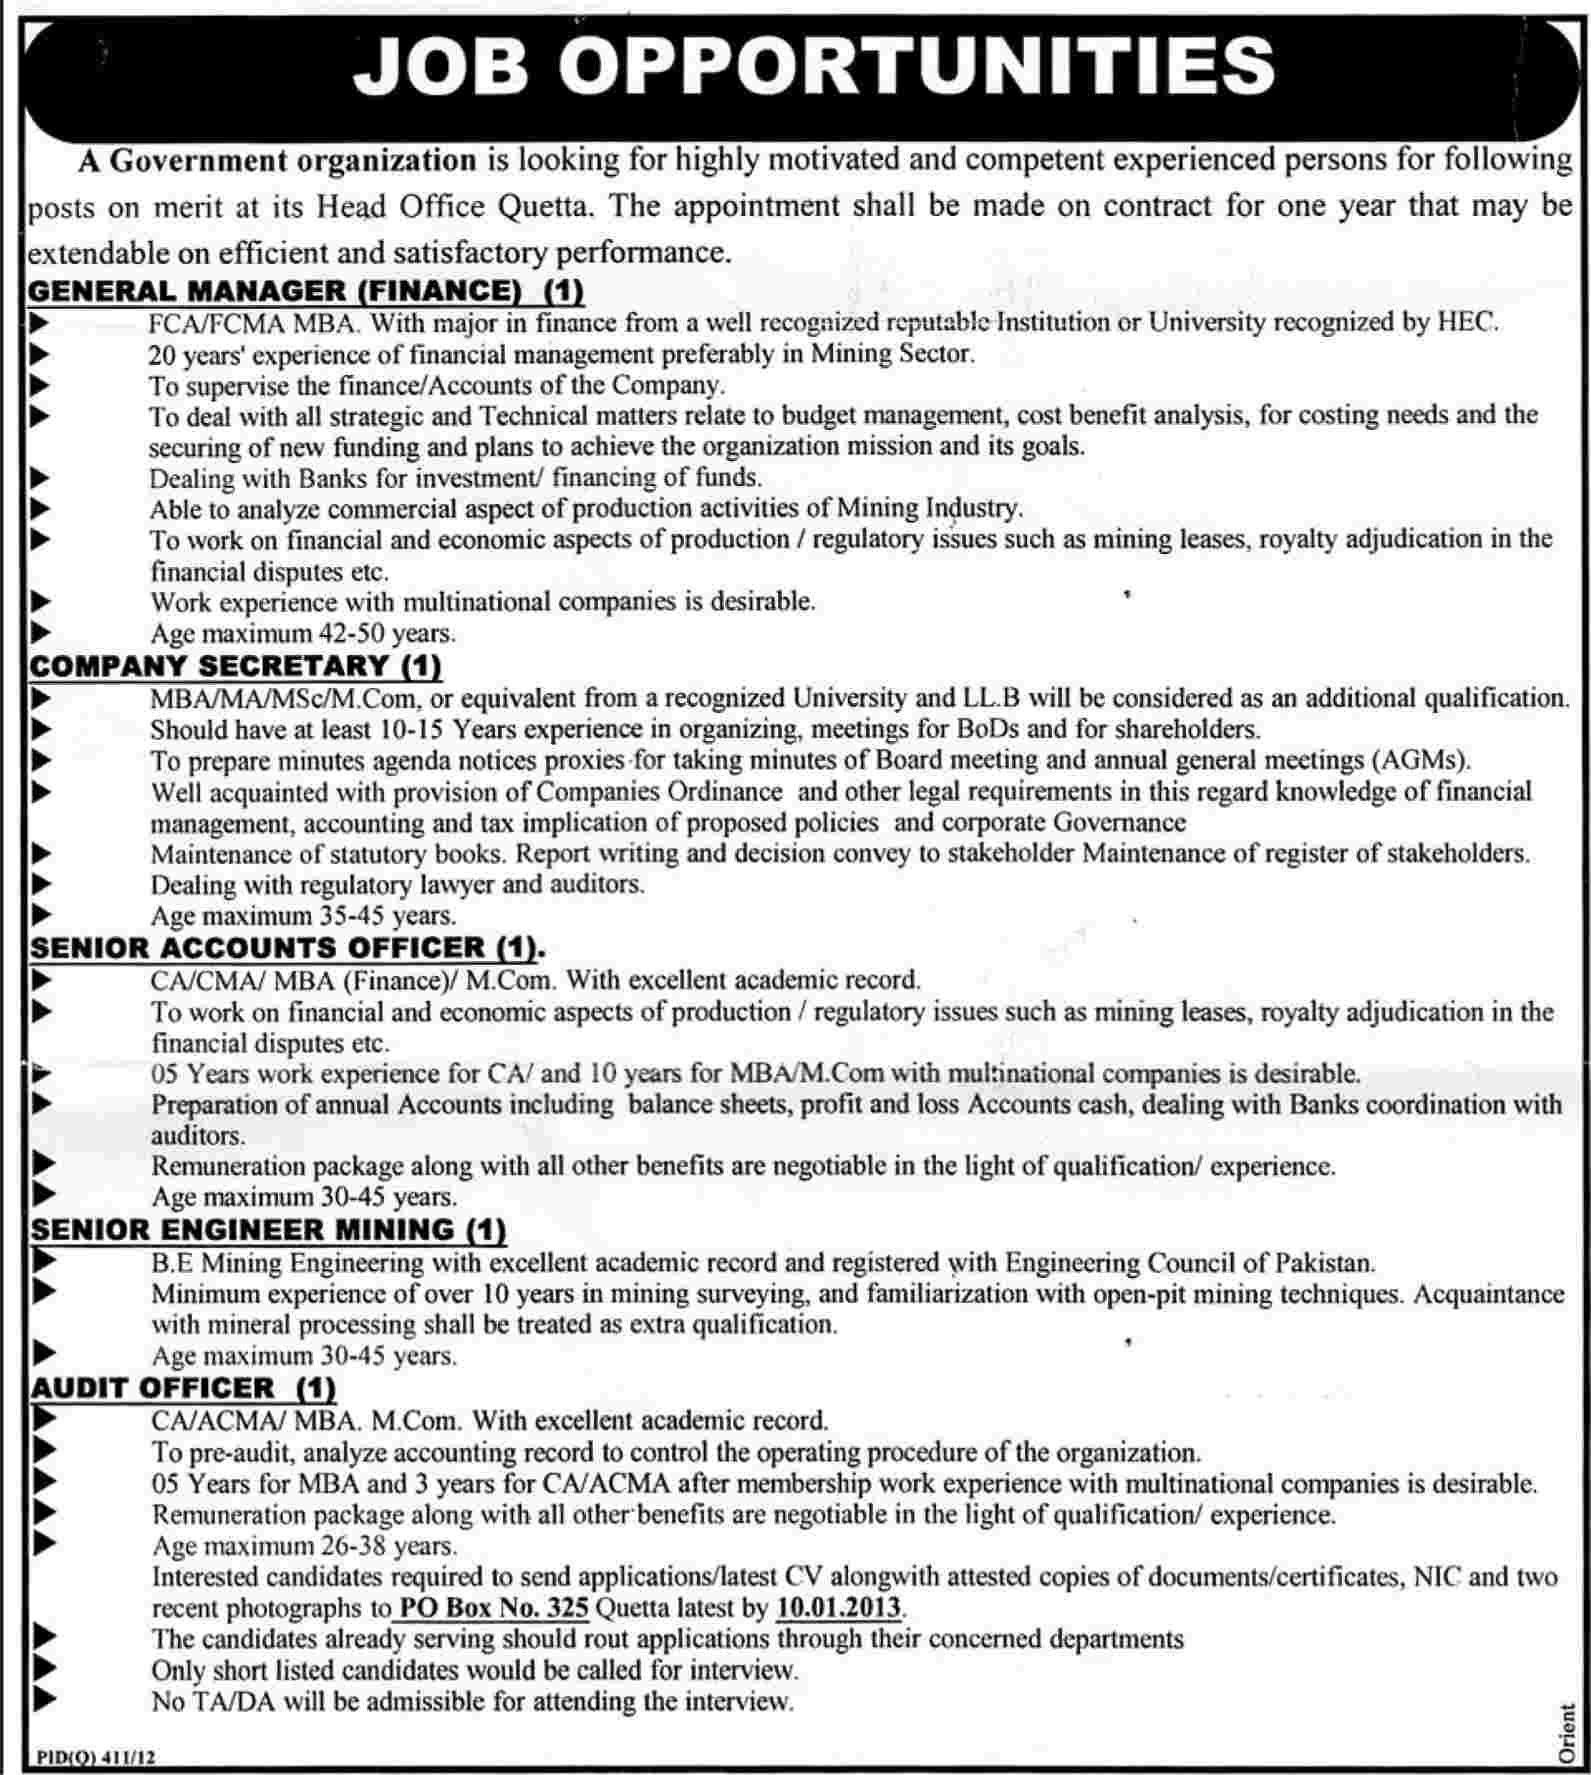 PO Box 325 Quetta Jobs 2012 December in a Government Organization